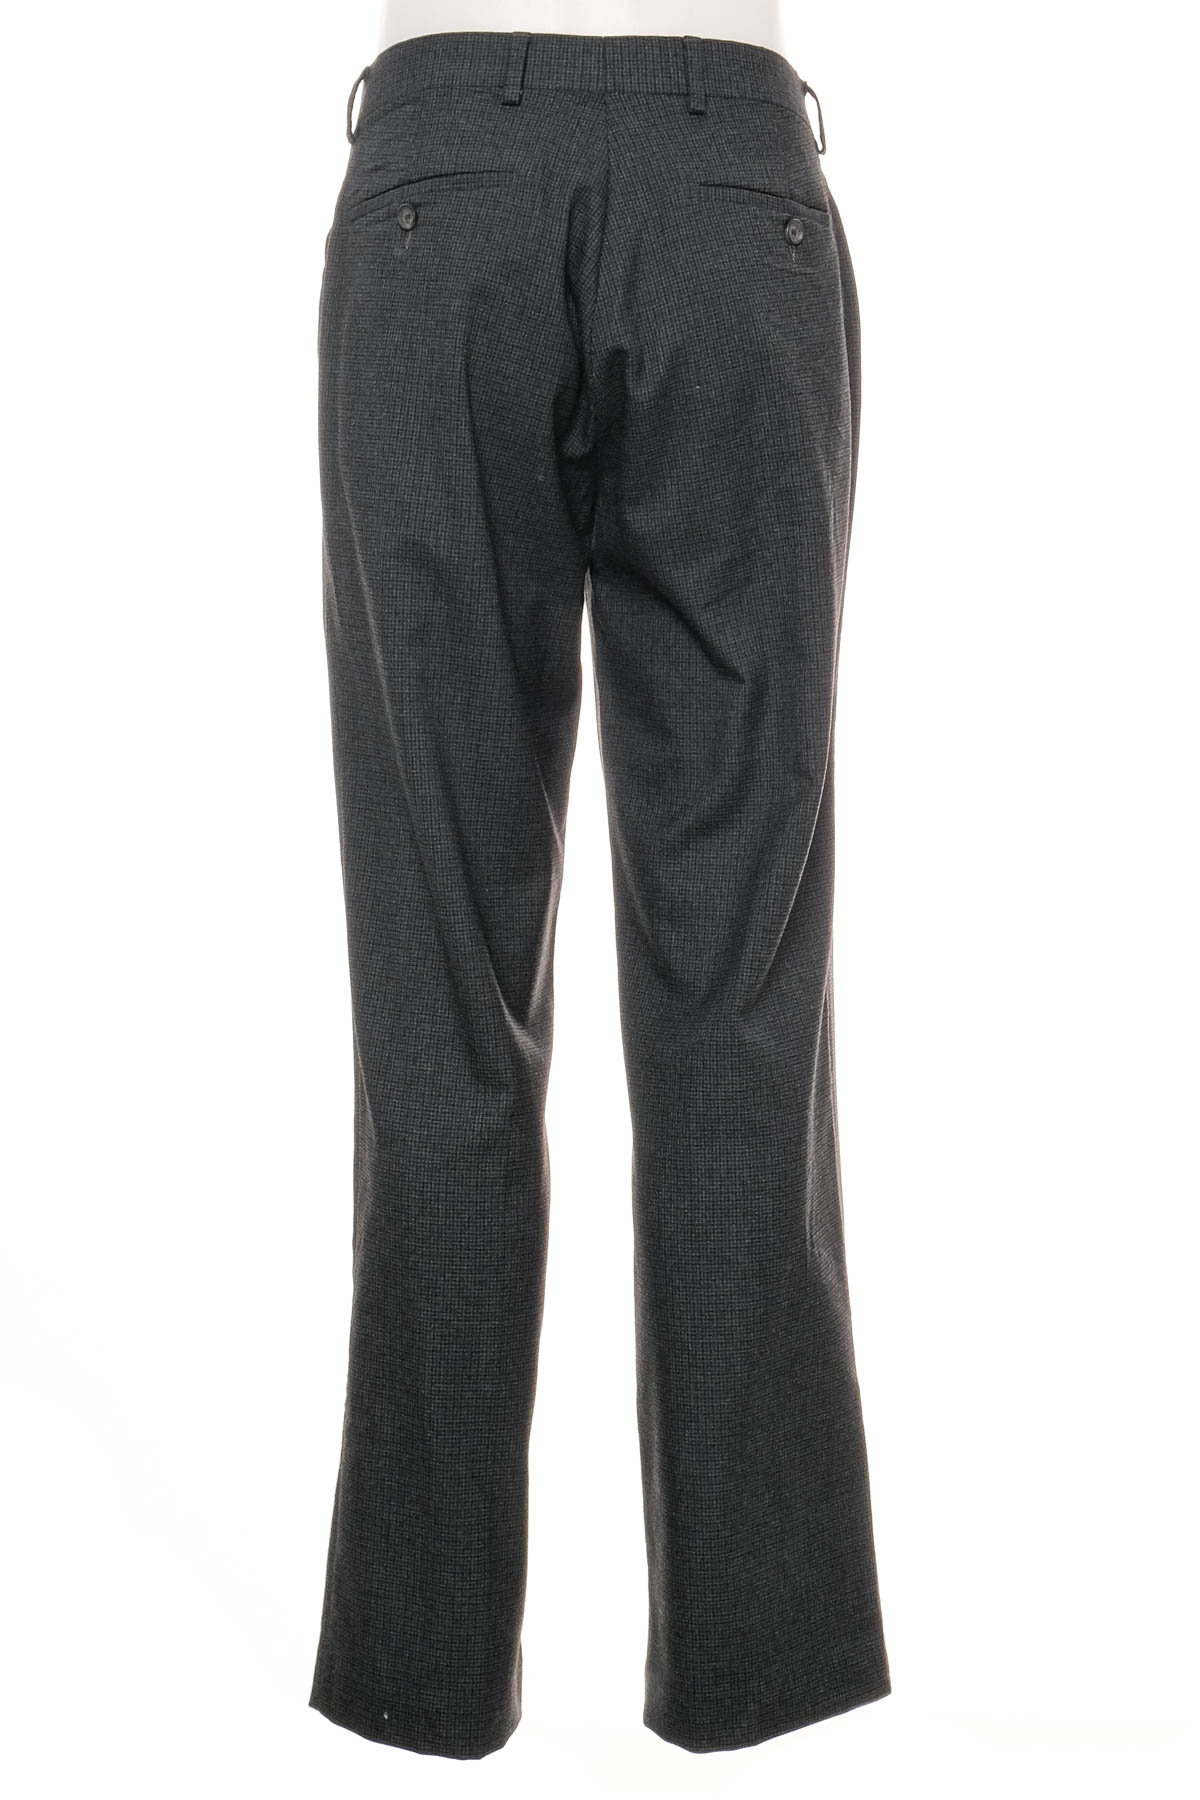 Men's trousers - Ralph Lauren - 1